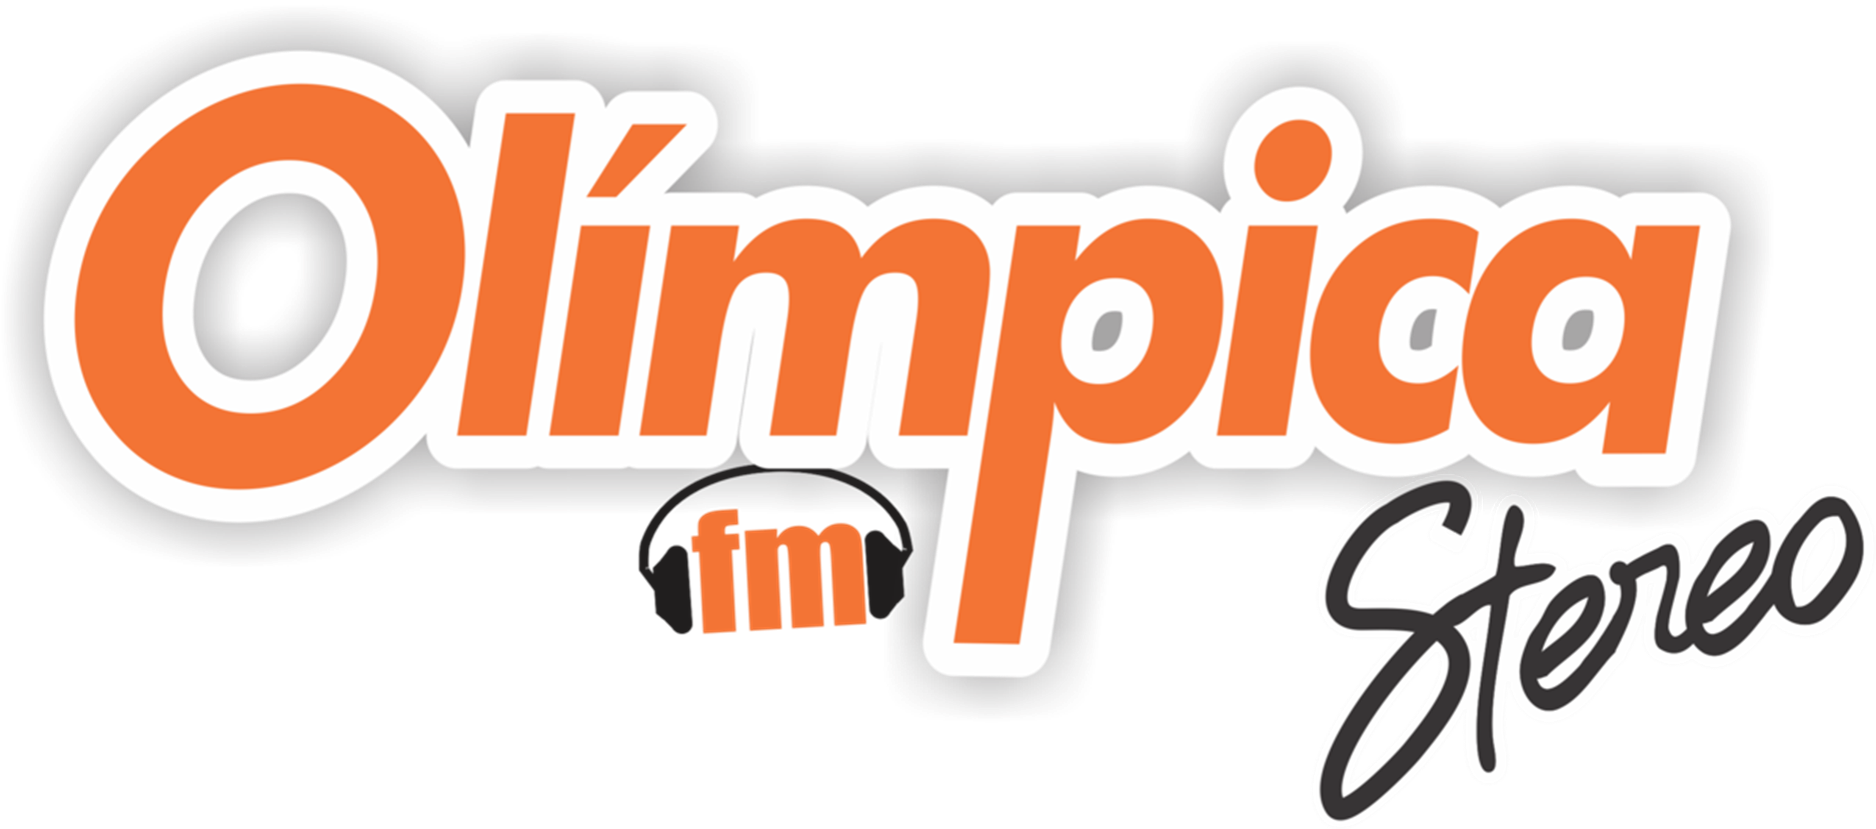 Olímpica Stereo, Logopedia